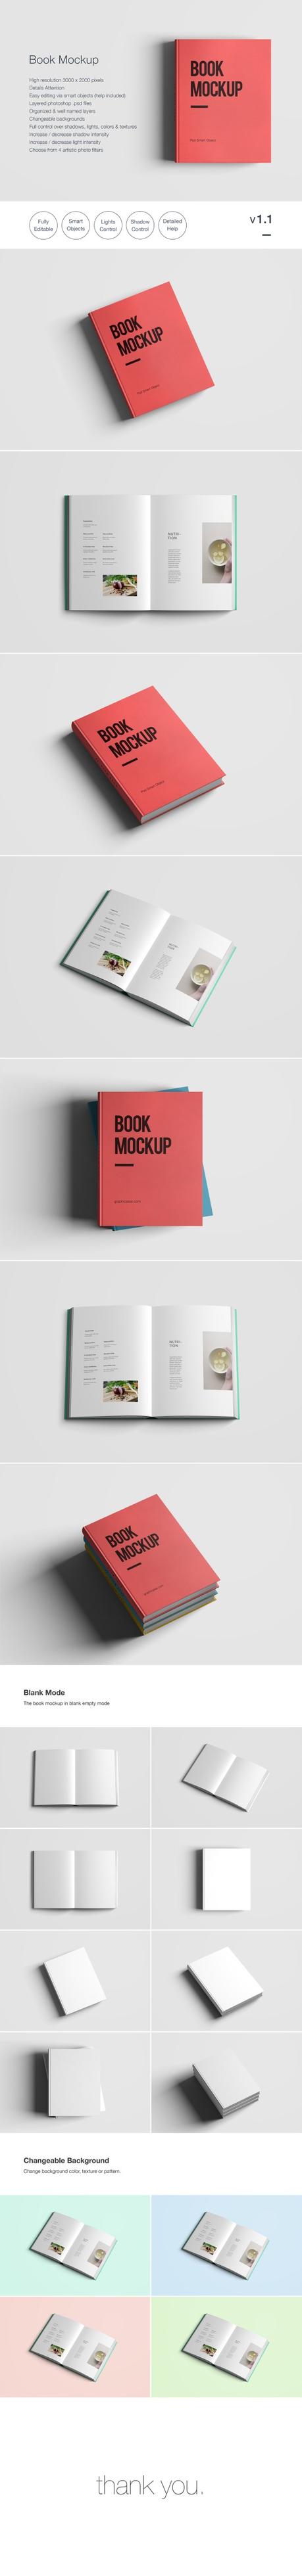 +85 Mockups Gratis de Libros y Revistas para editores y diseñadores